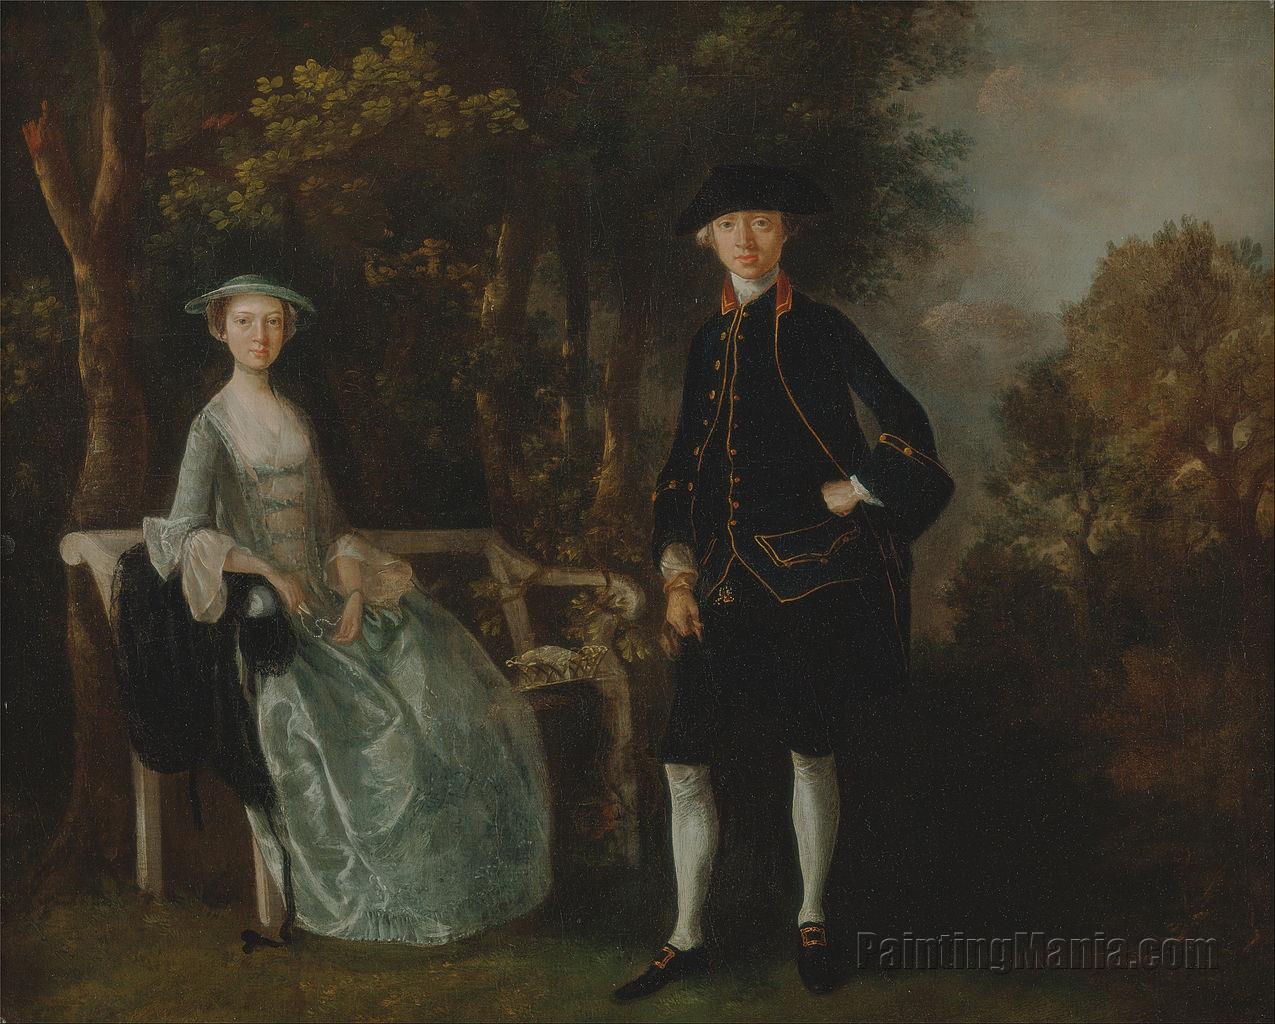 Lady Lloyd and Her Son, Richard Savage Lloyd, of Hintlesham Hall, Suffolk